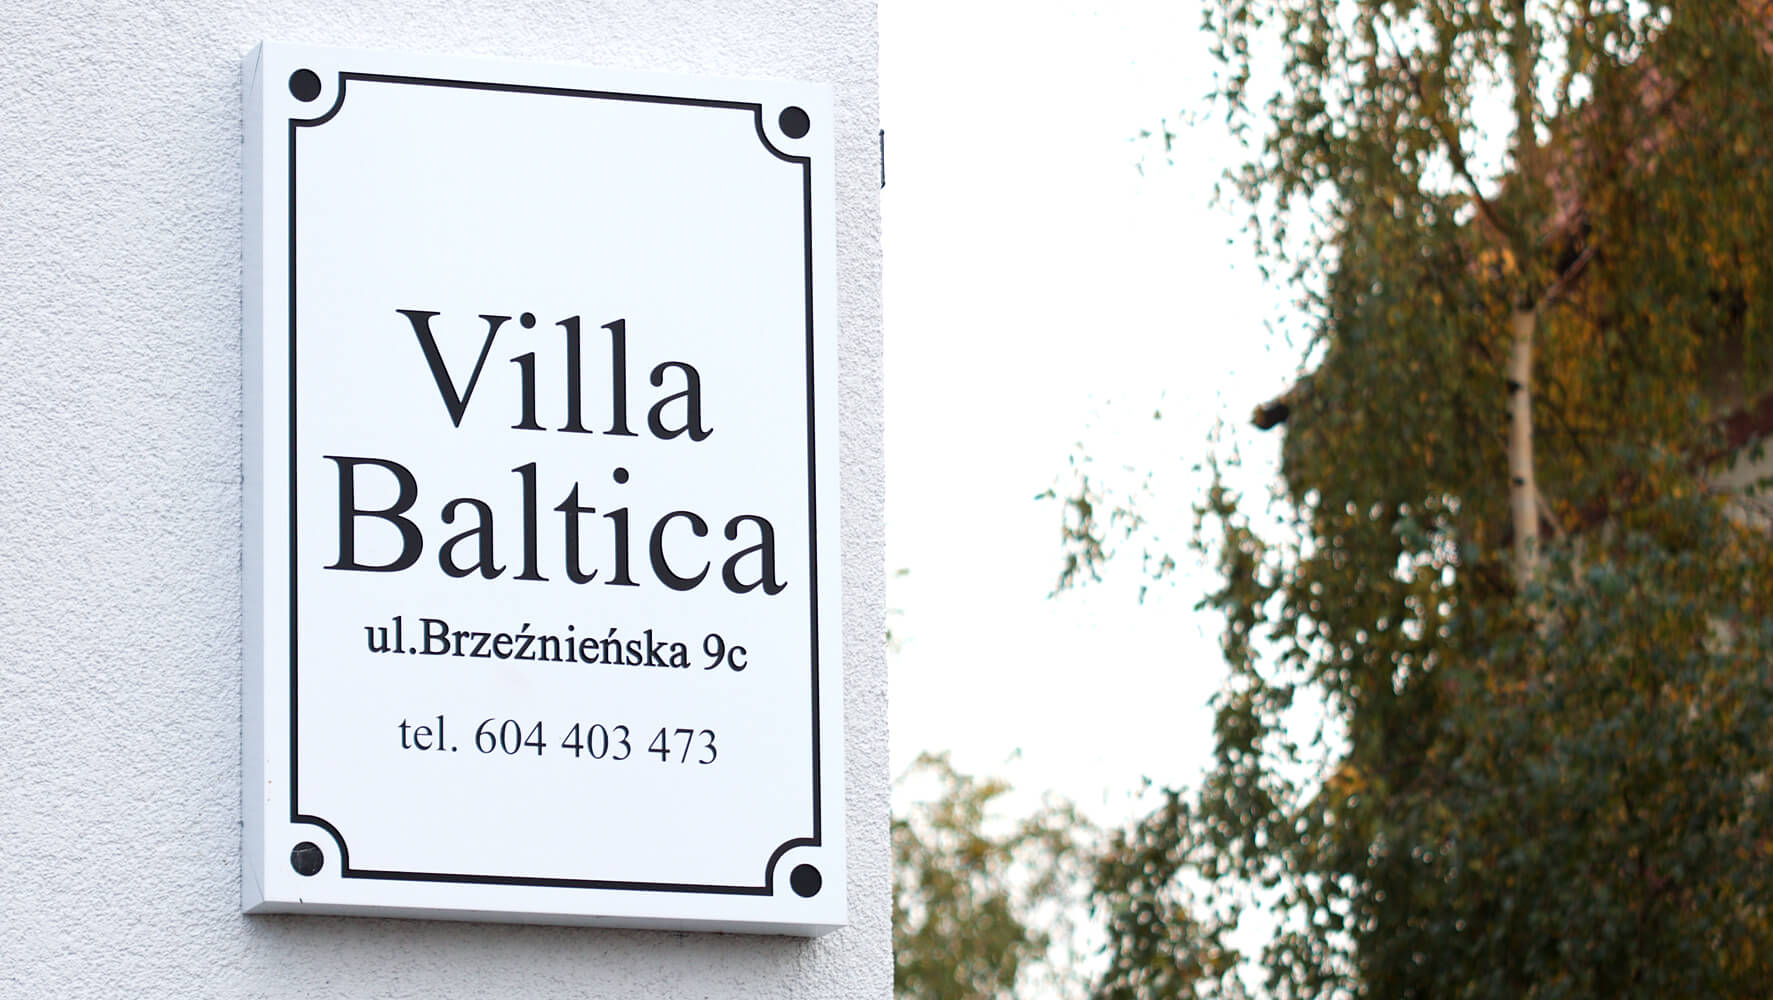 Villa Baltica - Villa Baltica - company signboard on dibond coffer in white matte color